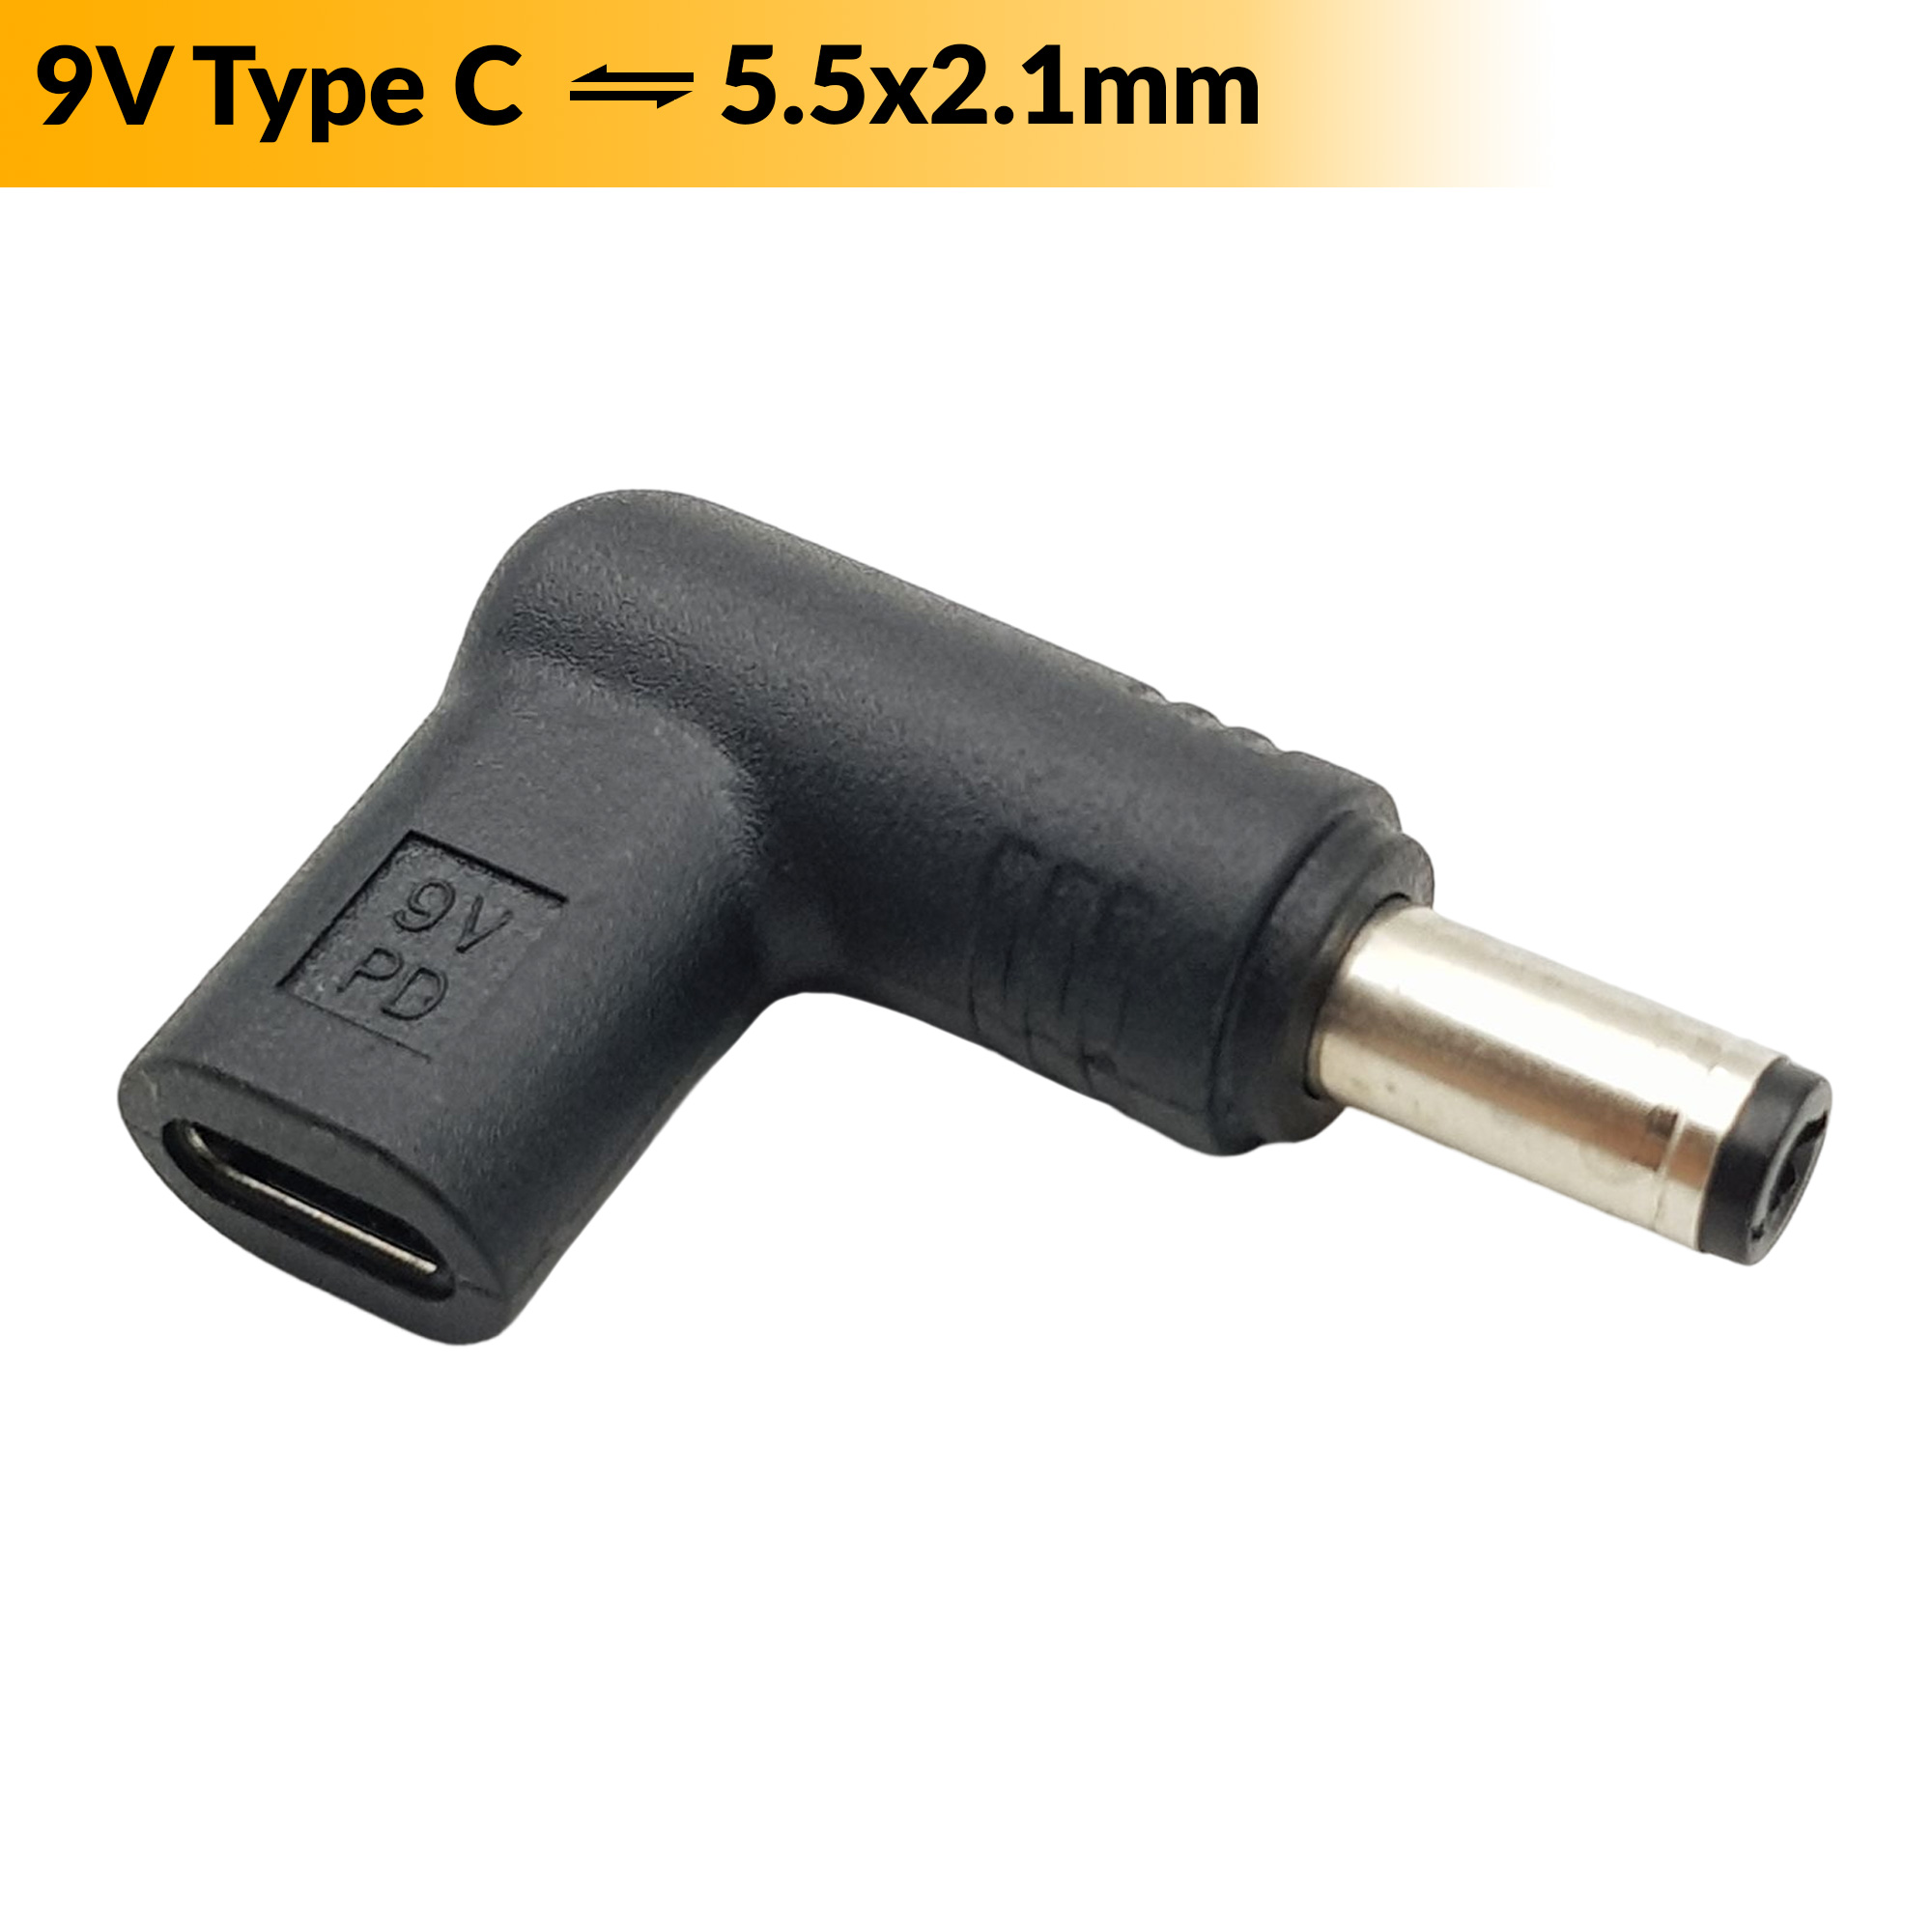 Đầu chuyển đổi USB Type C sang Jack DC 5.5x2.1mm (9v)